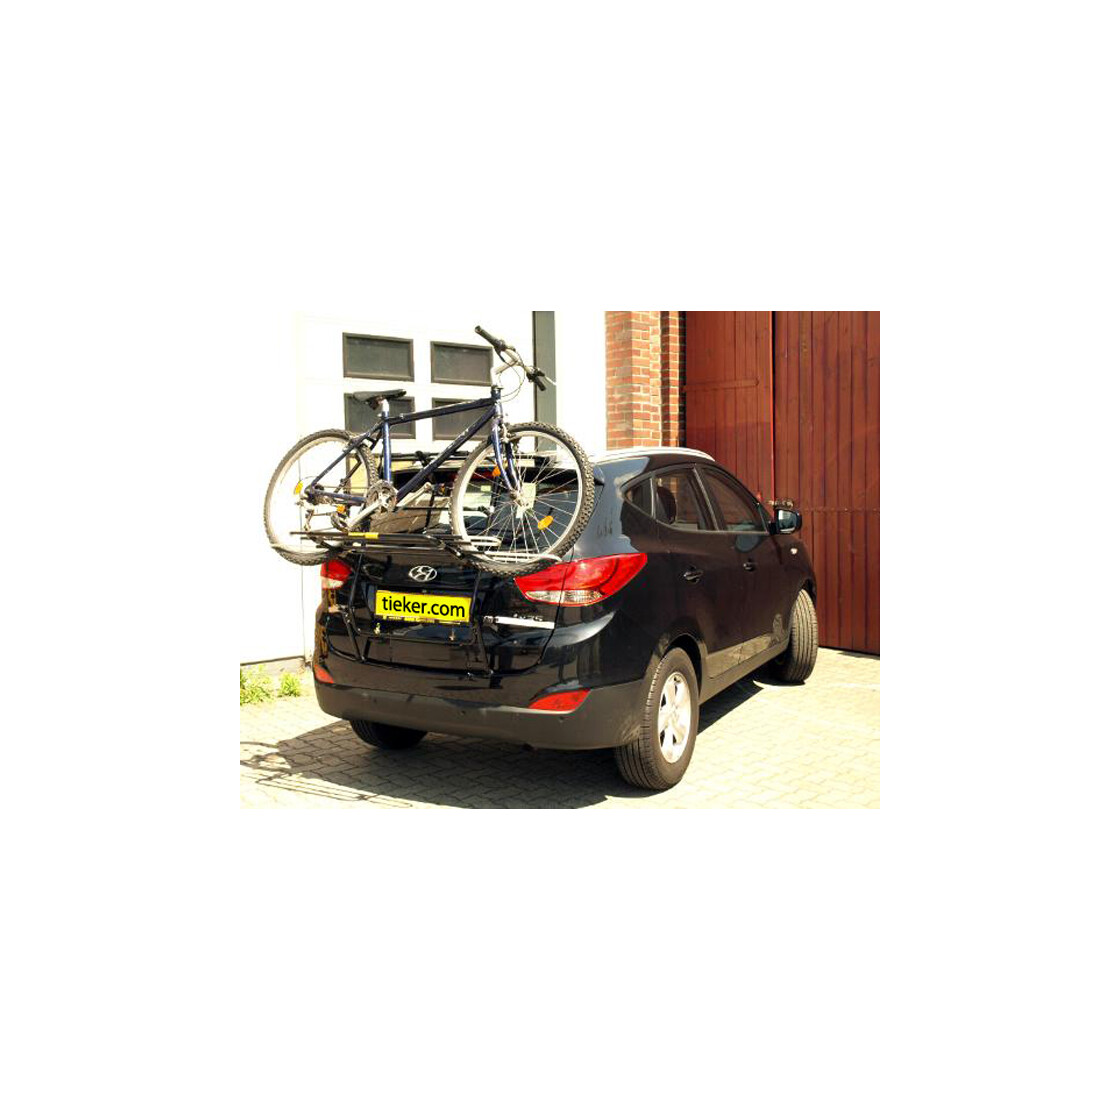 Ремонт hyundai ix35. Thule clipon Hyundai ix35. Багажник для велосипеда на Хендай ix35. Крепление для велосипеда на Хендай ix35. Байк Икс 35.